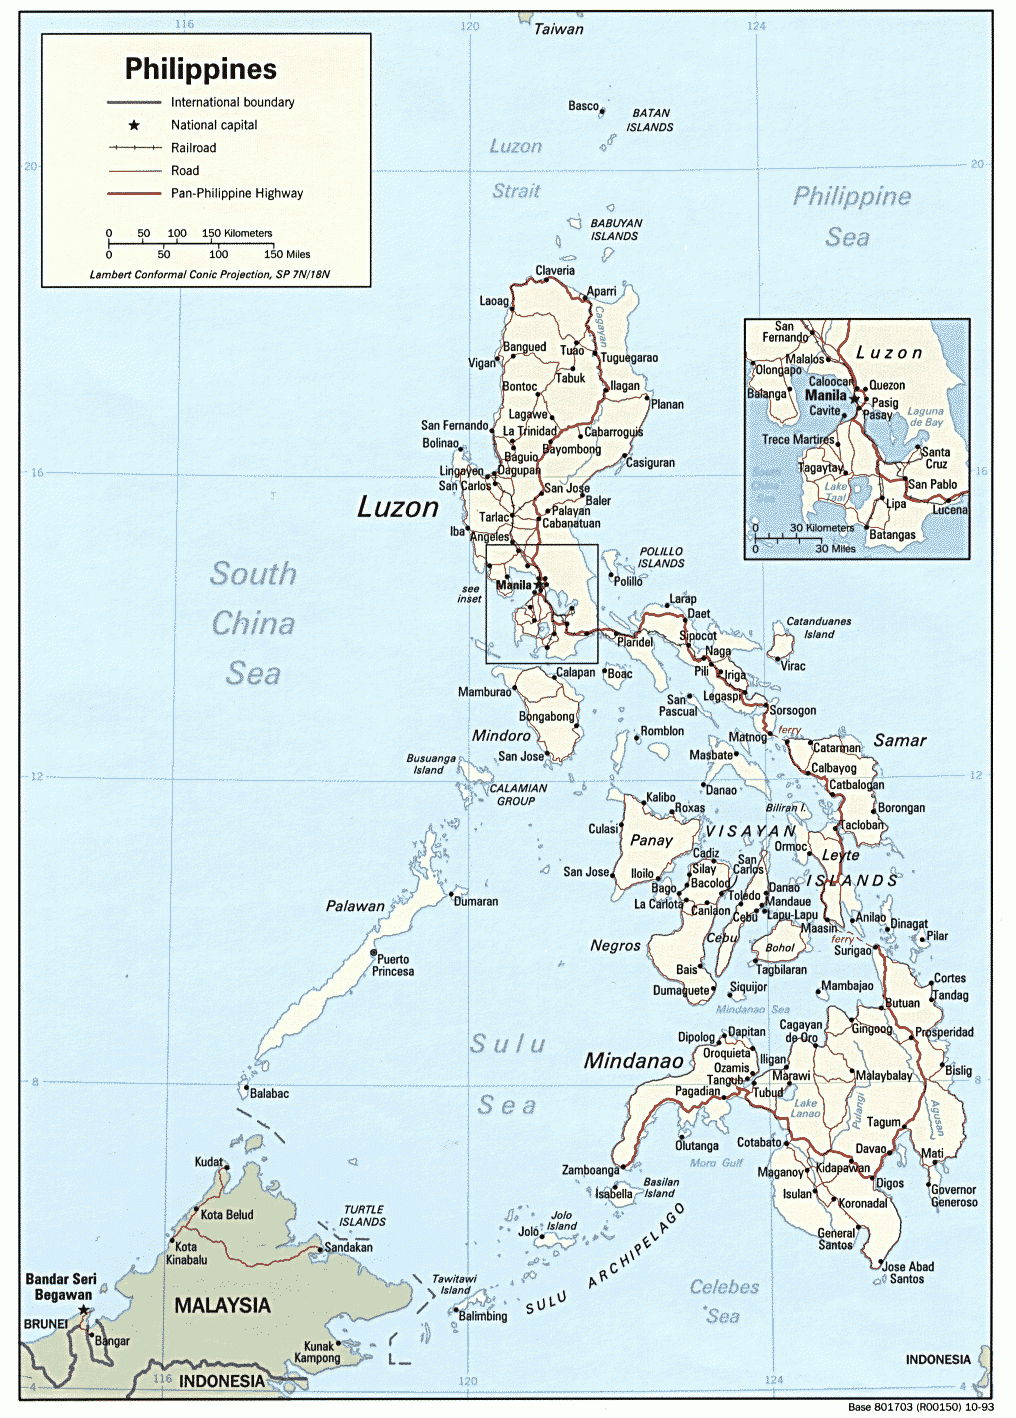 菲律宾地形图